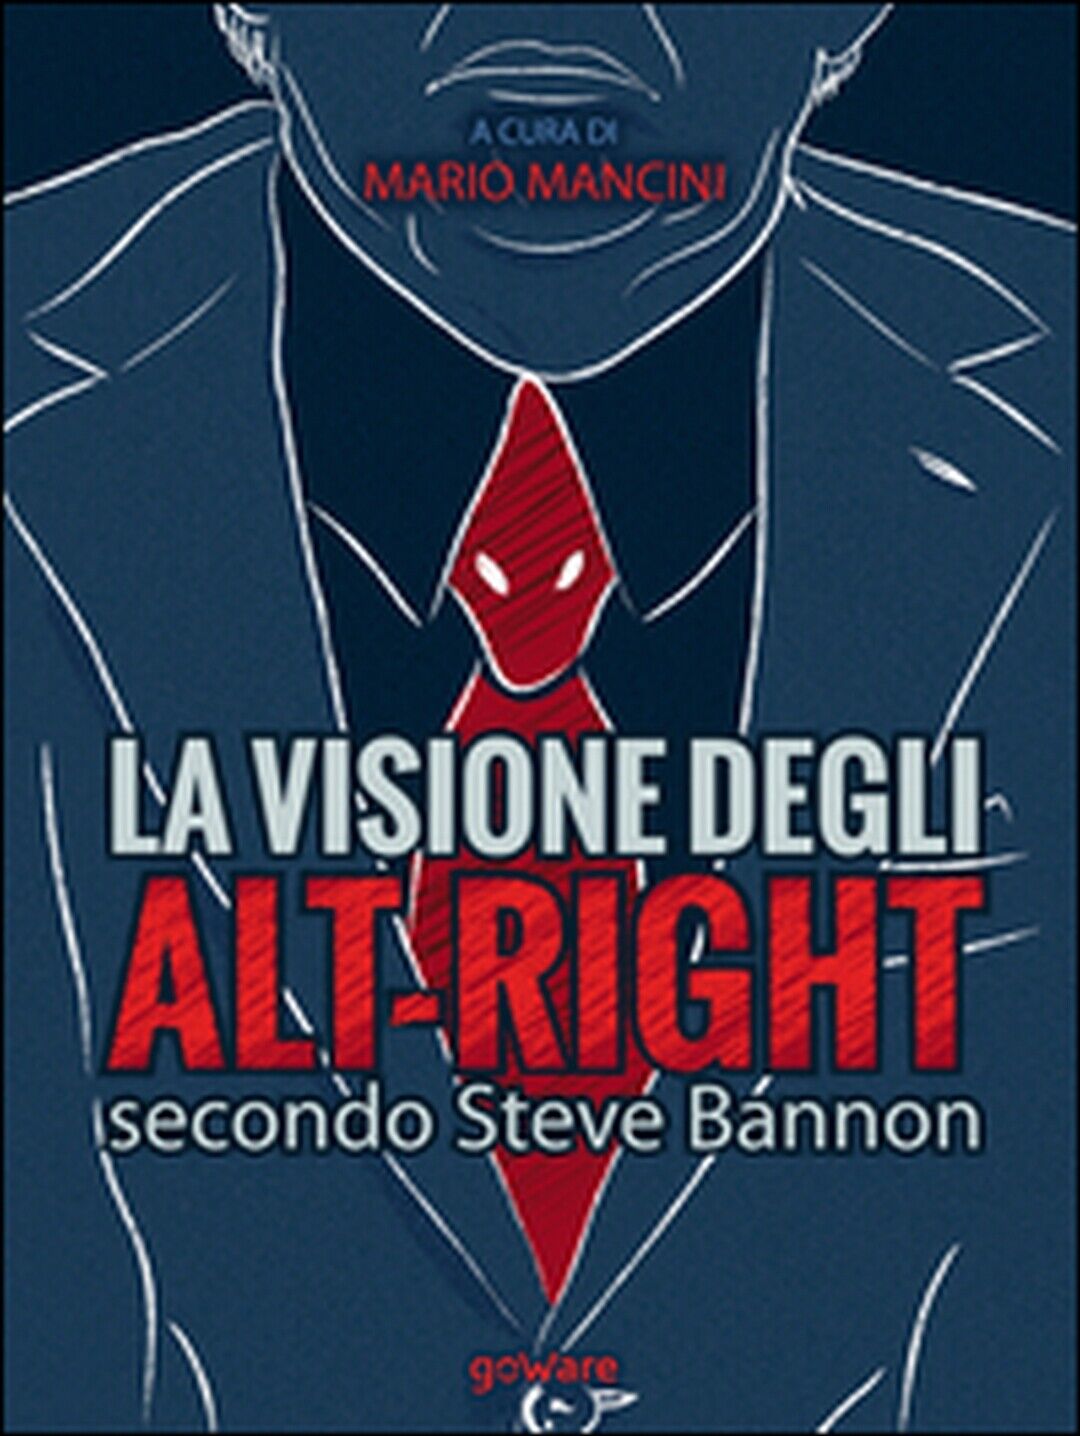 La visione degli alt-right secondo Steve Bannon, M. Mancini,  2017,  Goware